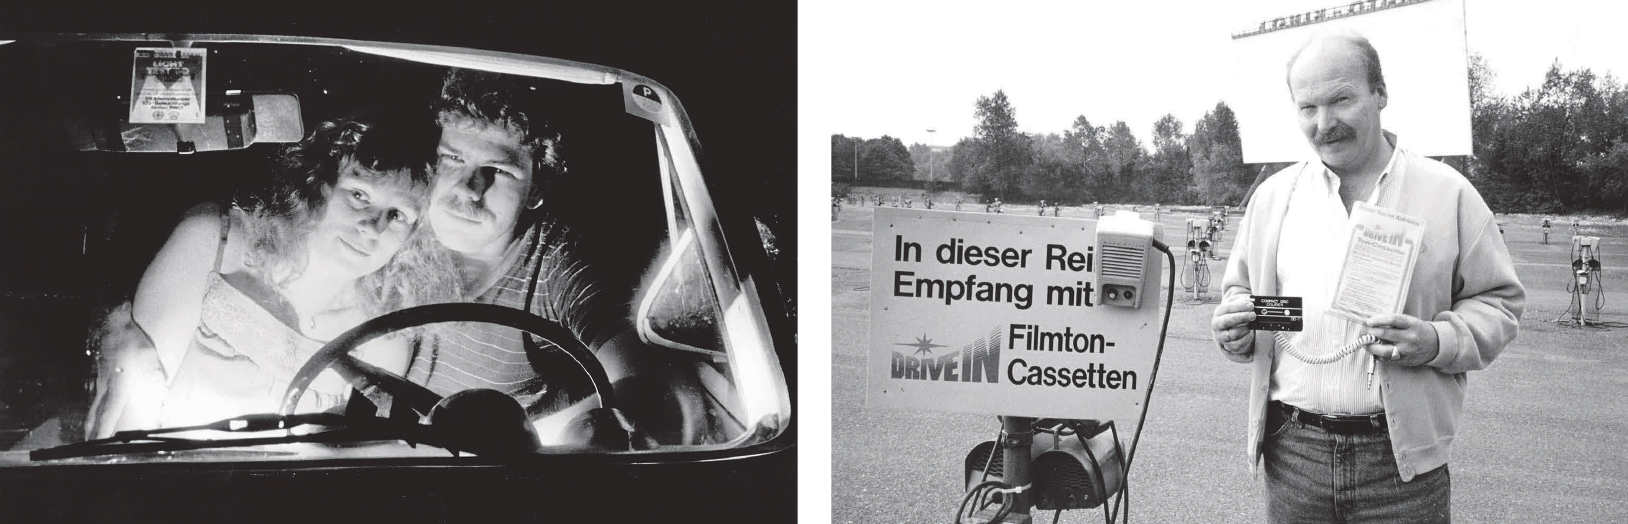 Knabbern, Knutschen, Kino – Filmzirkus vor der Windschutzscheibe-2